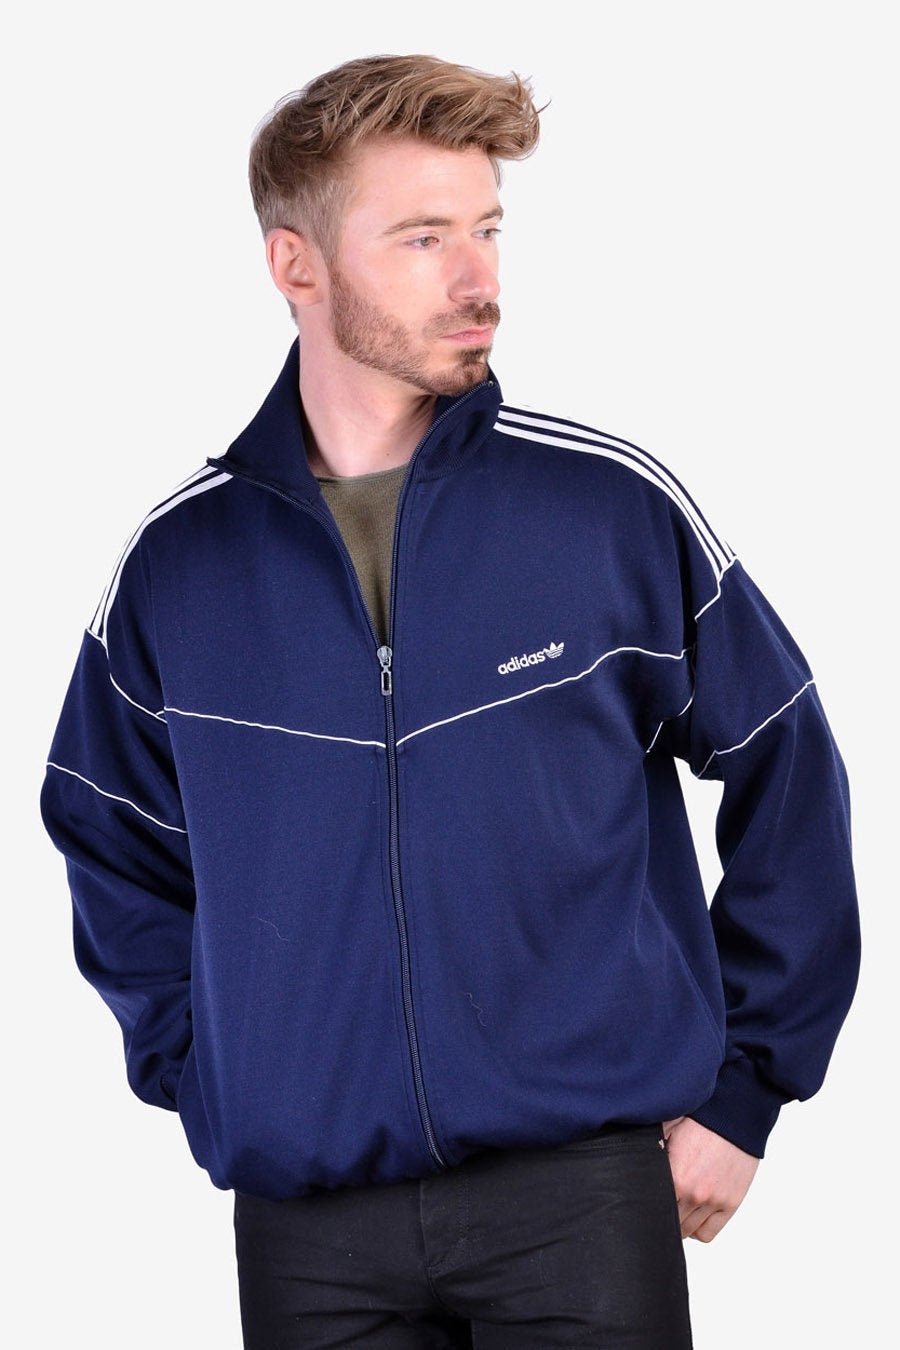 Vintage 1980's Adidas Navy Blue Tracksuit Jacket Size | Etsy